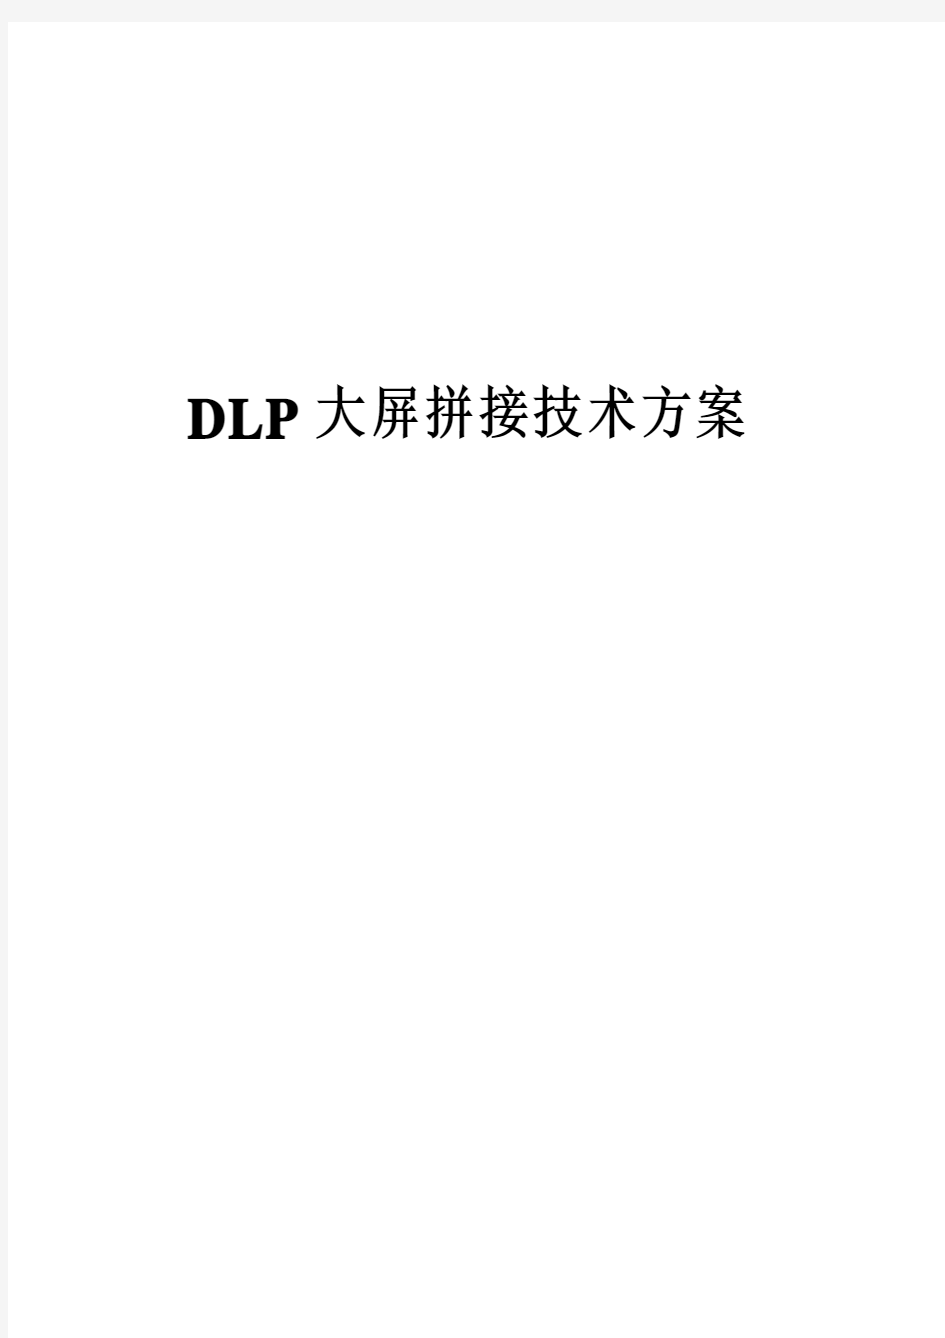 DLP大屏拼接技术方案